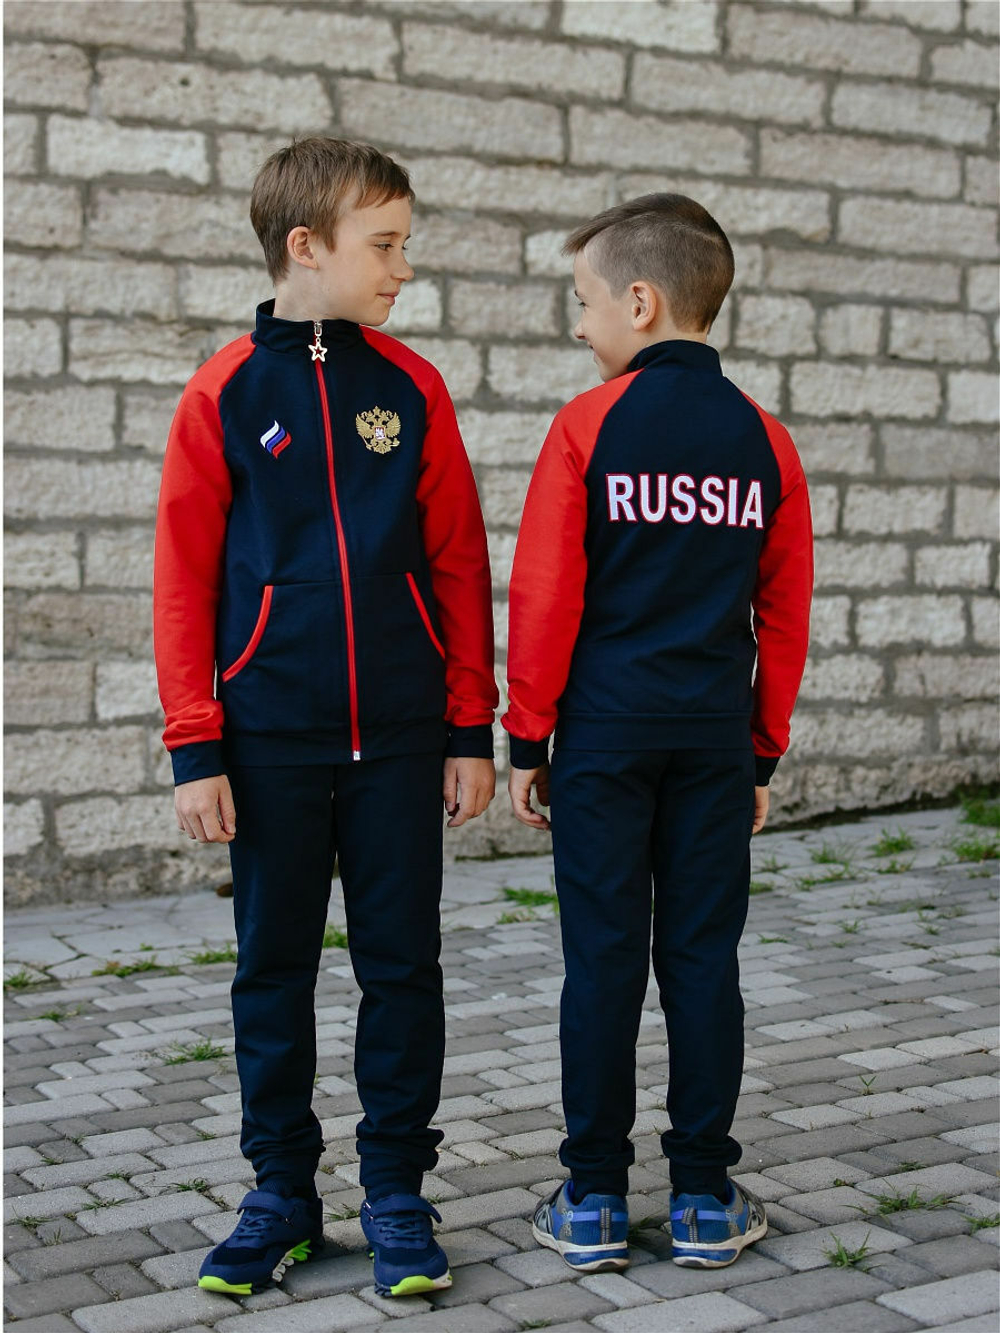 Спортивный костюм Классика для мальчика (красный рукав)